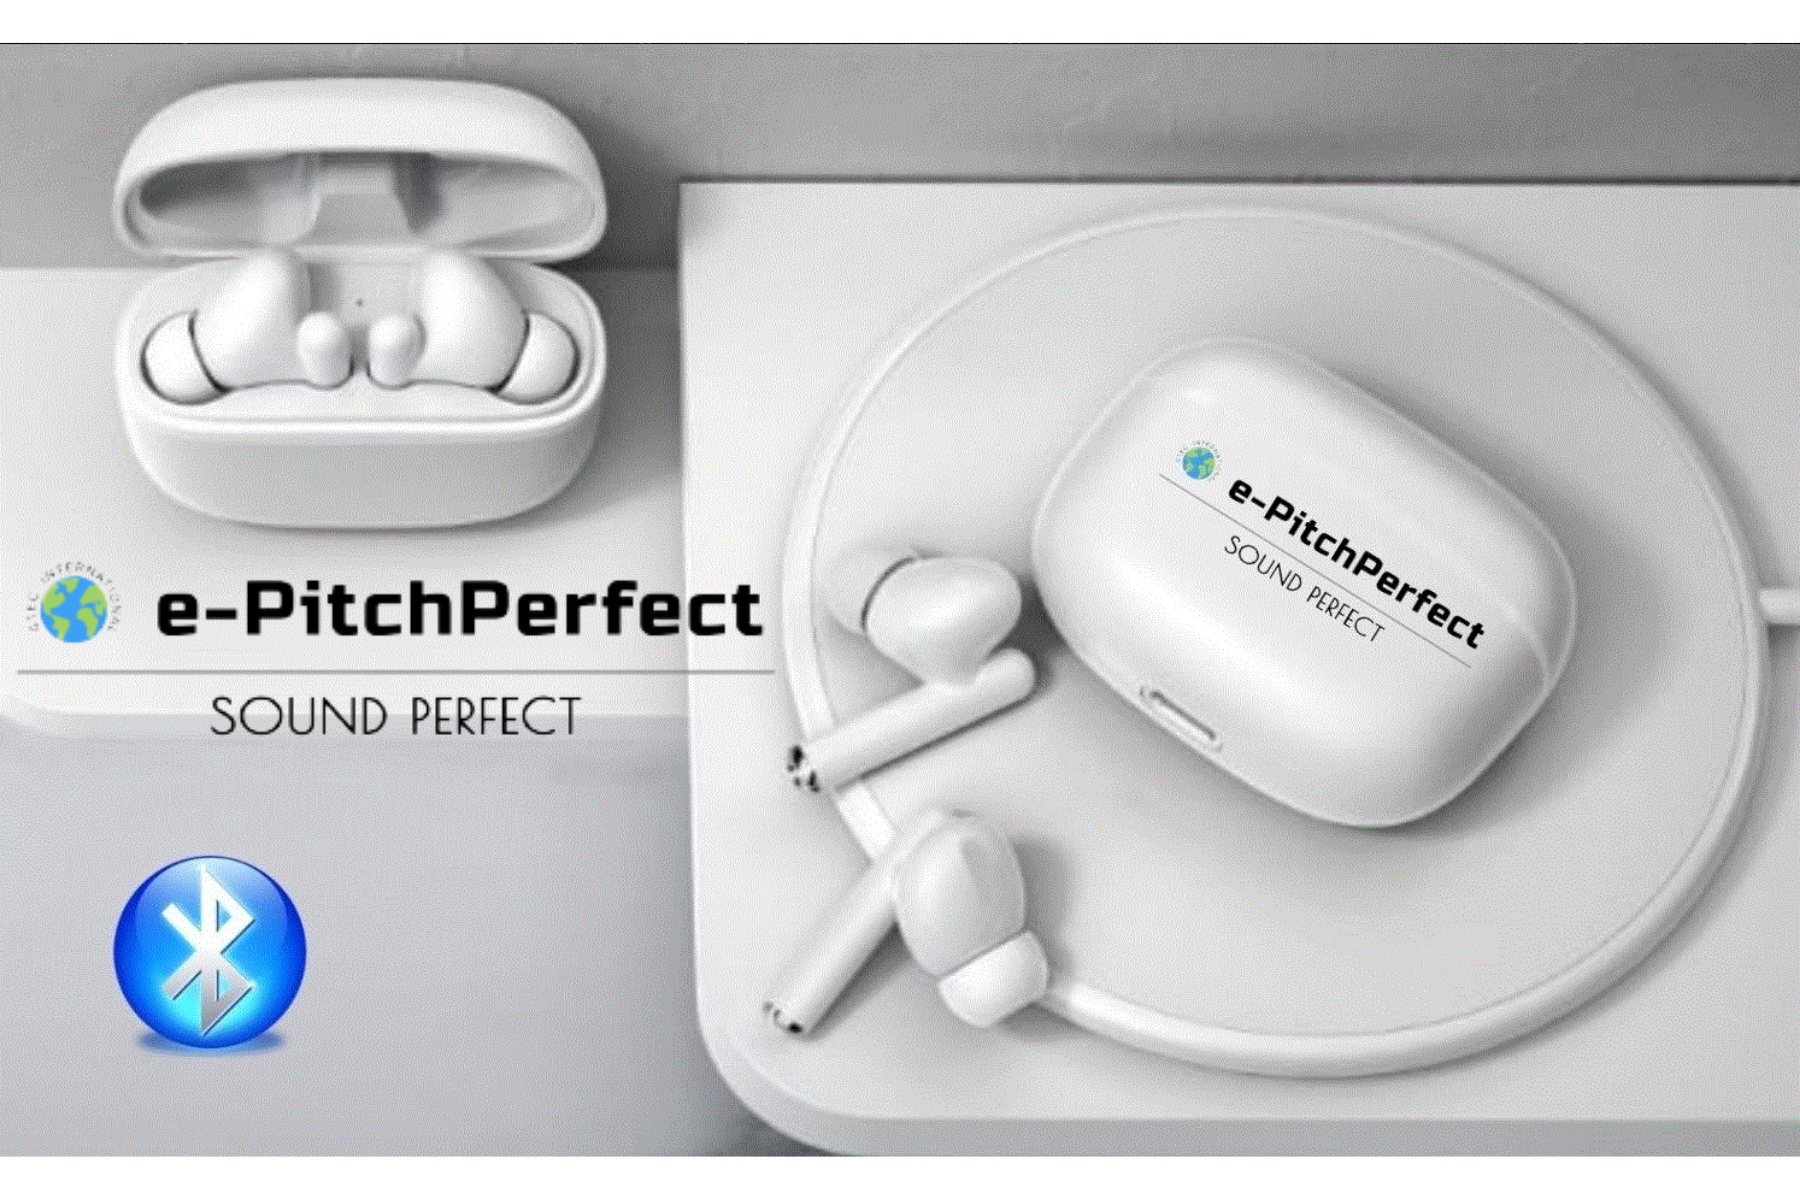 e-PitchPerfect combinación de auriculares inalámbricos Bluetooth manos libres y auriculares Bluetooth TWS con micrófono incorporado para llamadas compatibles con Lenovo, Samsung, Sony, Oppo, Vivo Todos los teléfonos Android y Apple